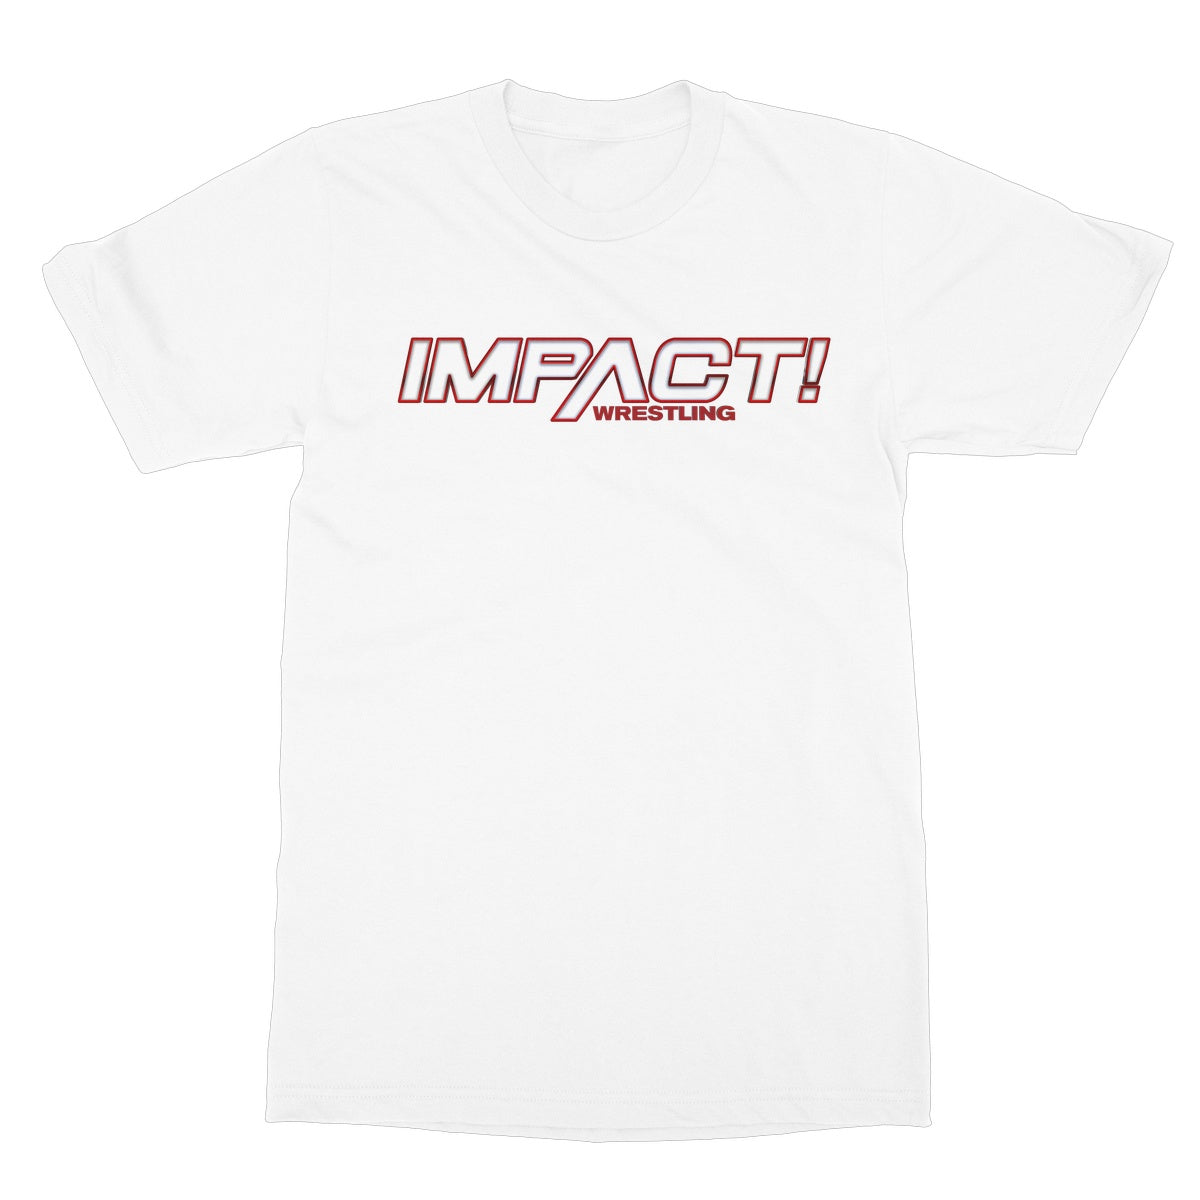 2019 IMPACT WRESTLING LOGO Softstyle T-Shirt